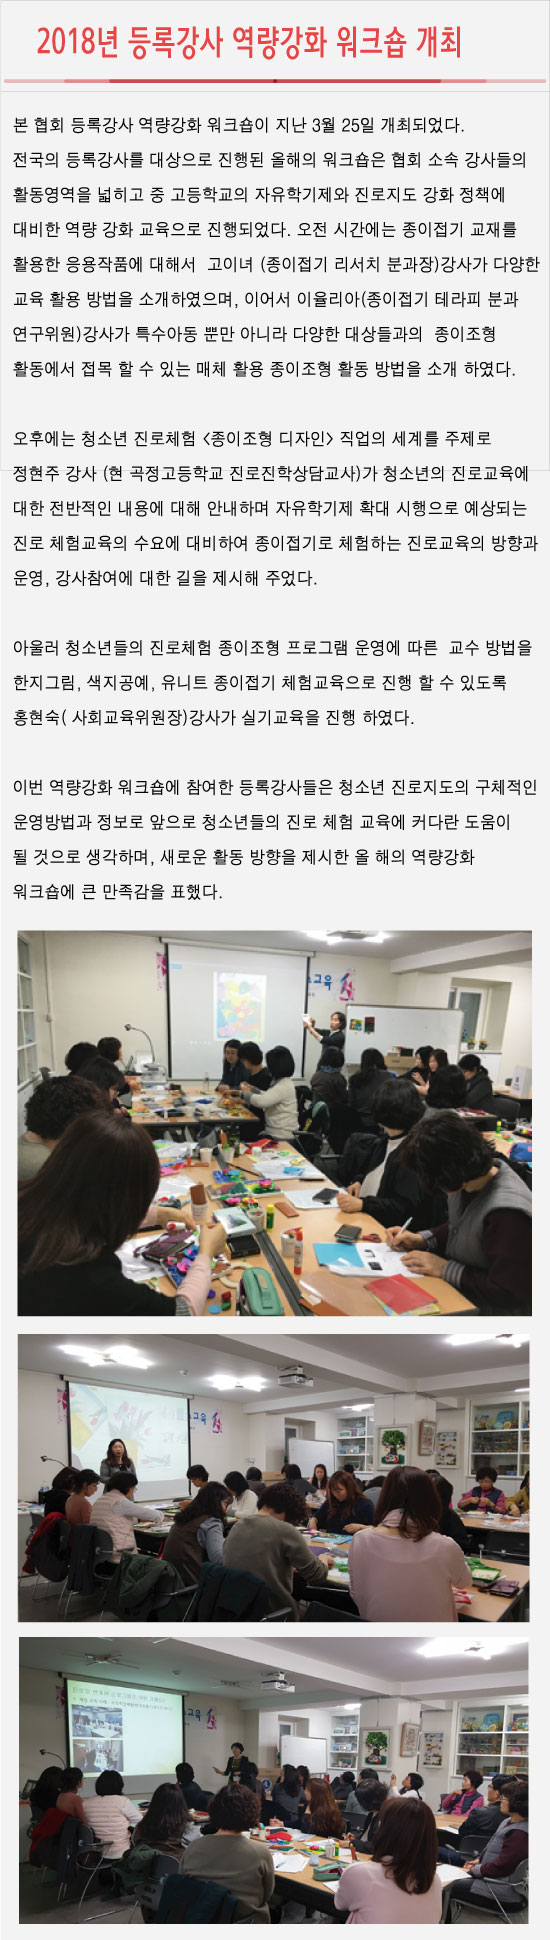 18.04.11 2018년 등록강사 역량강화 워크숍 개최2.jpg